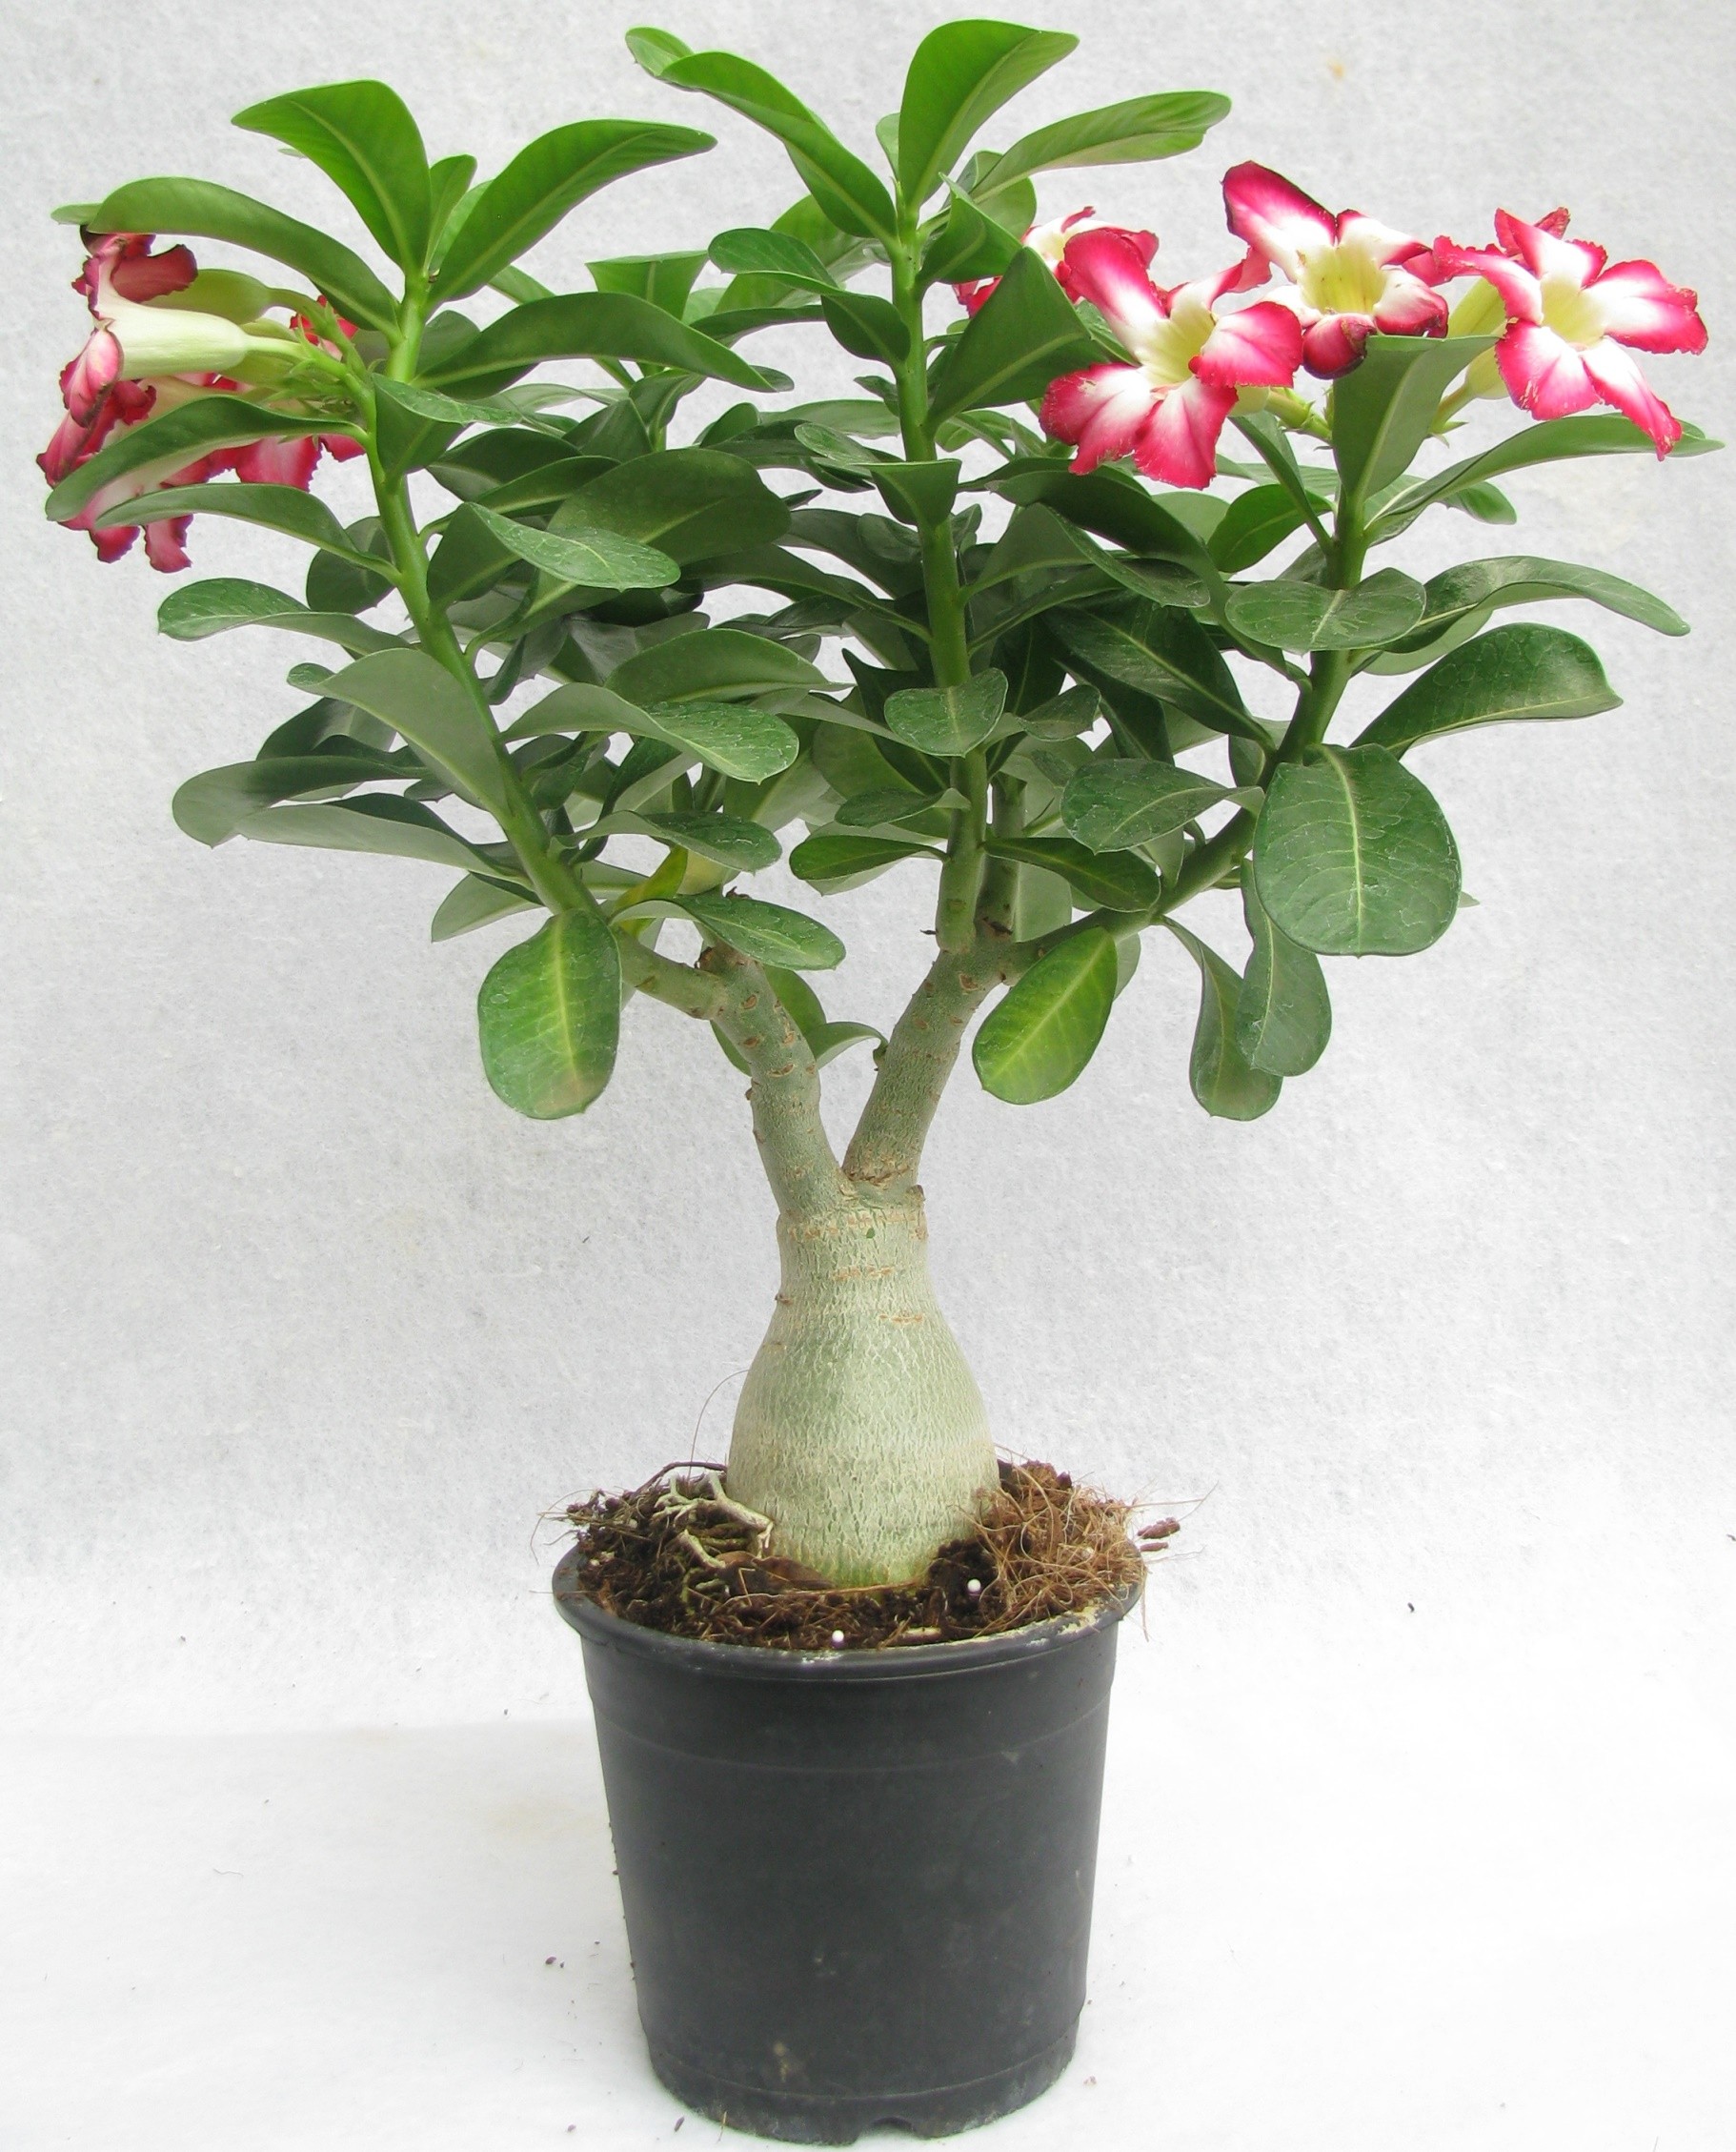 Buy Adenium Desert Rose Plant Online @ ₹799 from ShopClues